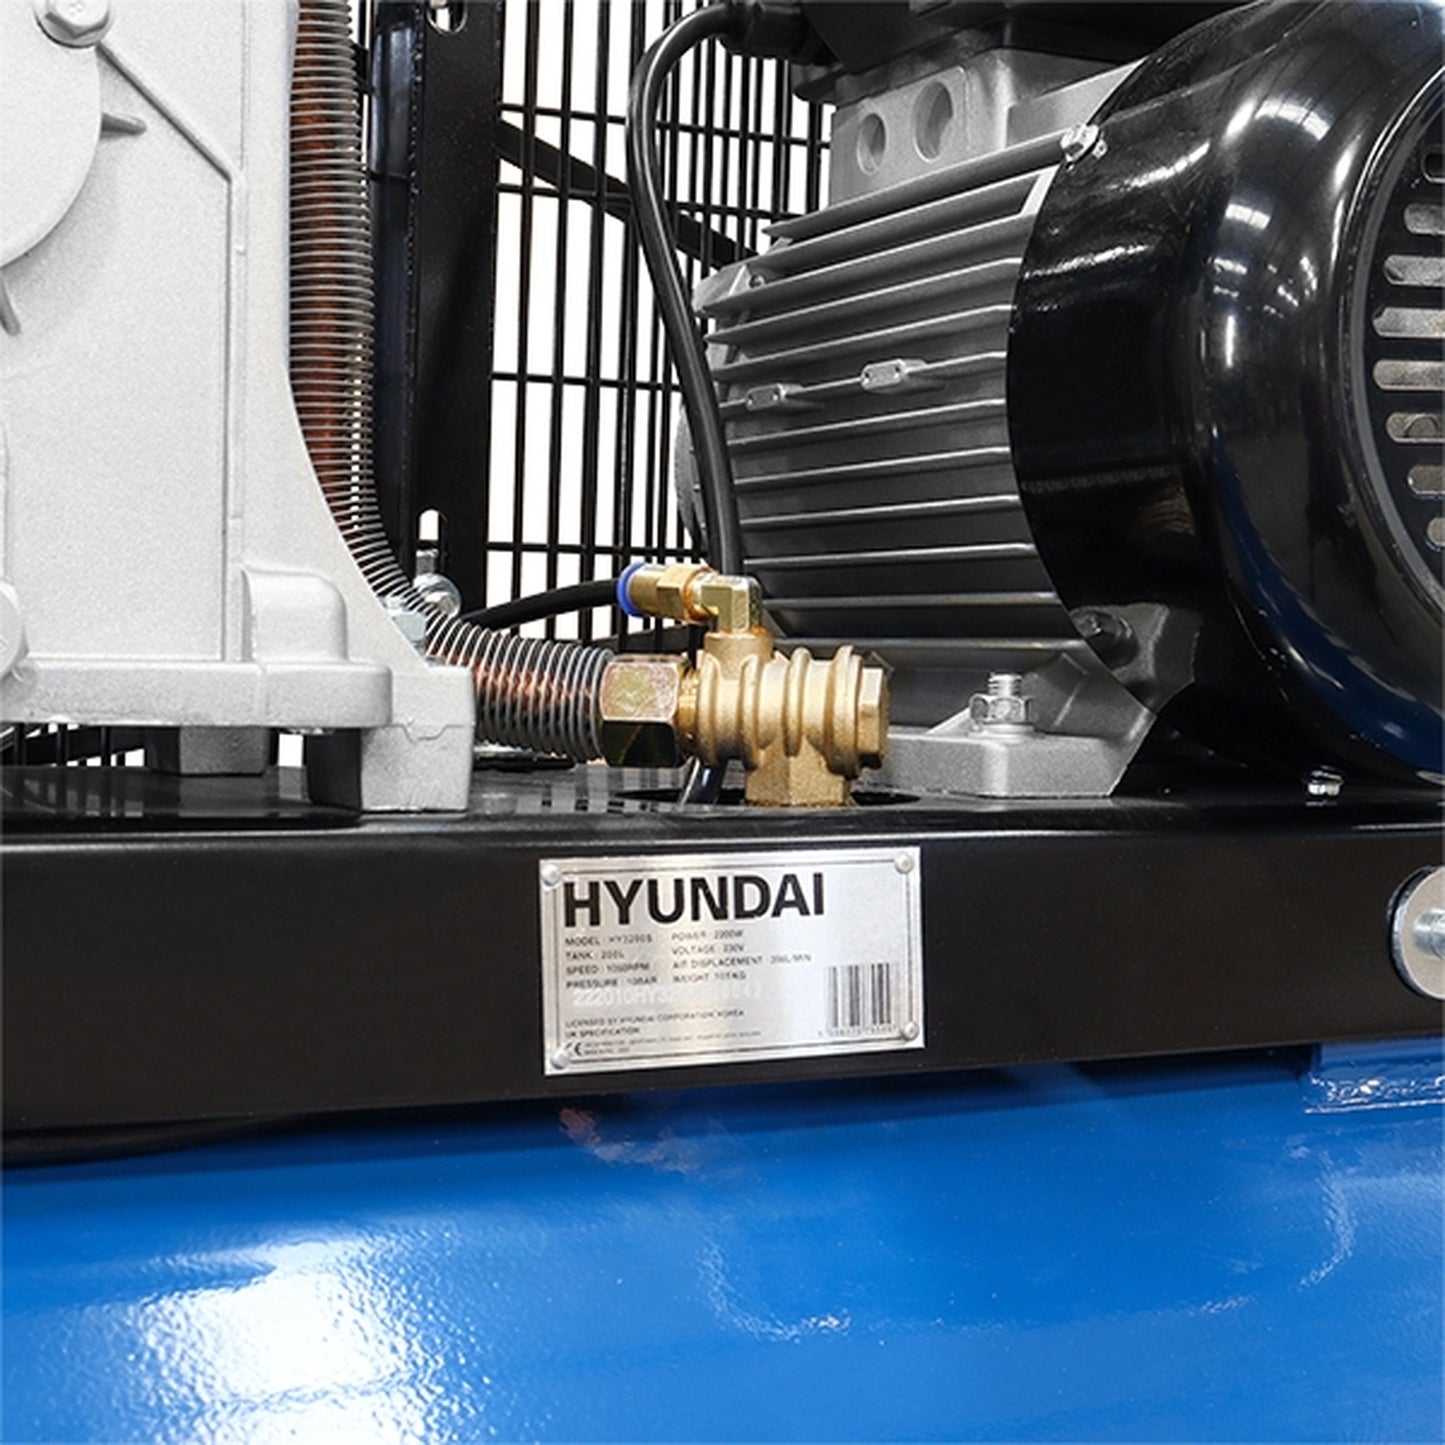 Hyundai HY3200S Electric Air Compressor 200L